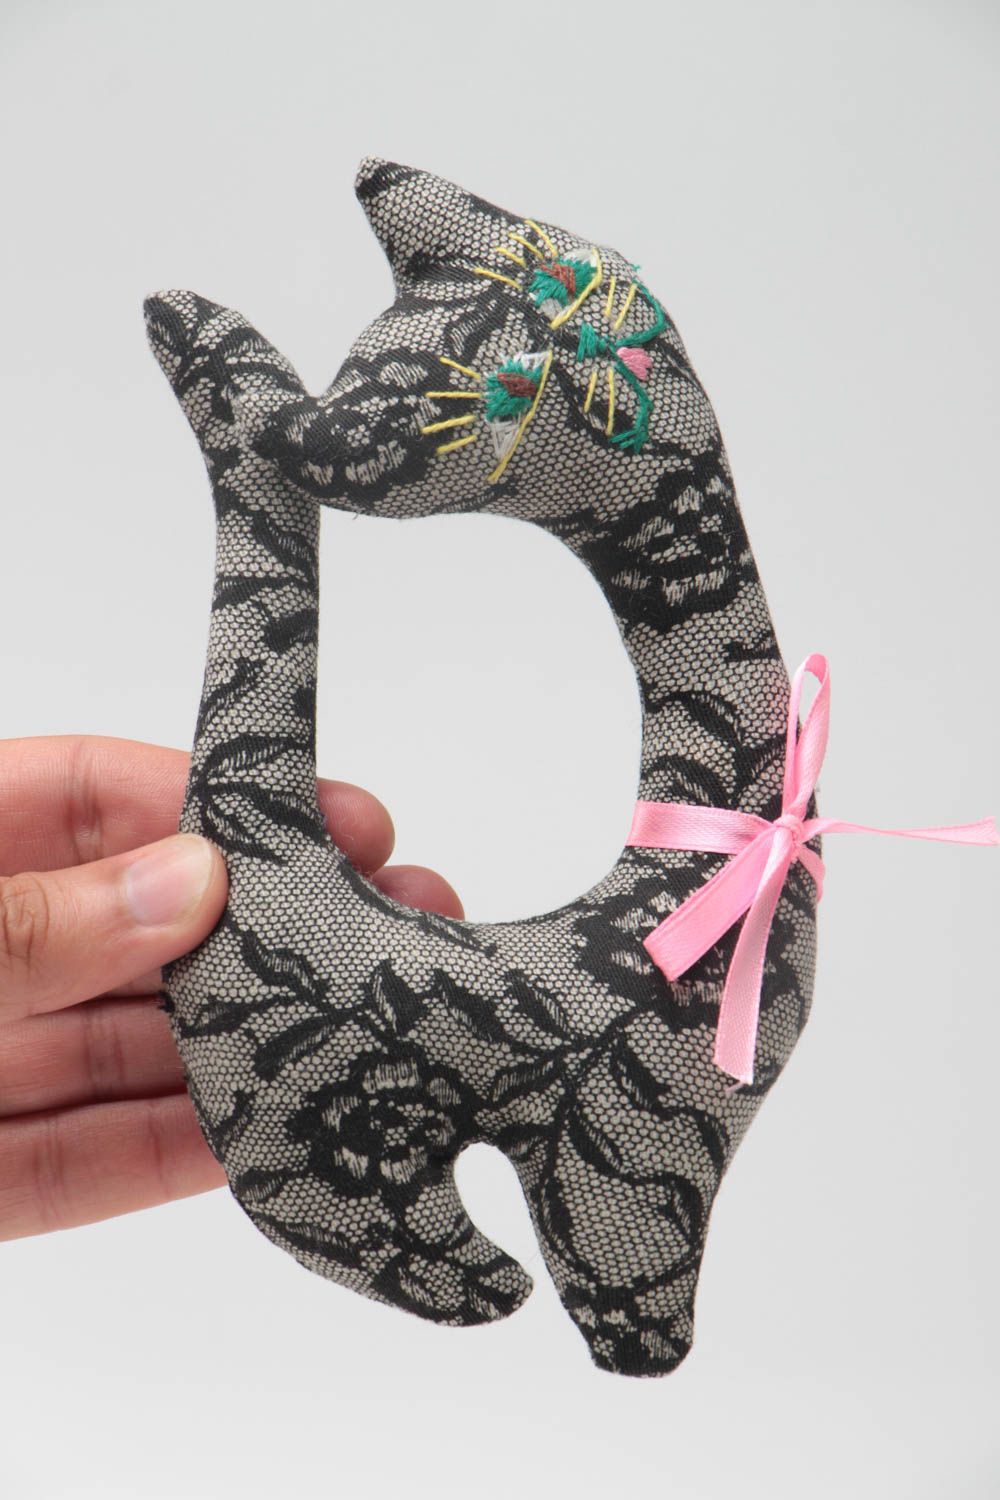 Textil Kuscheltier Katze aus Wolle schwarz weich handmade Spielzeug für Kinder foto 5